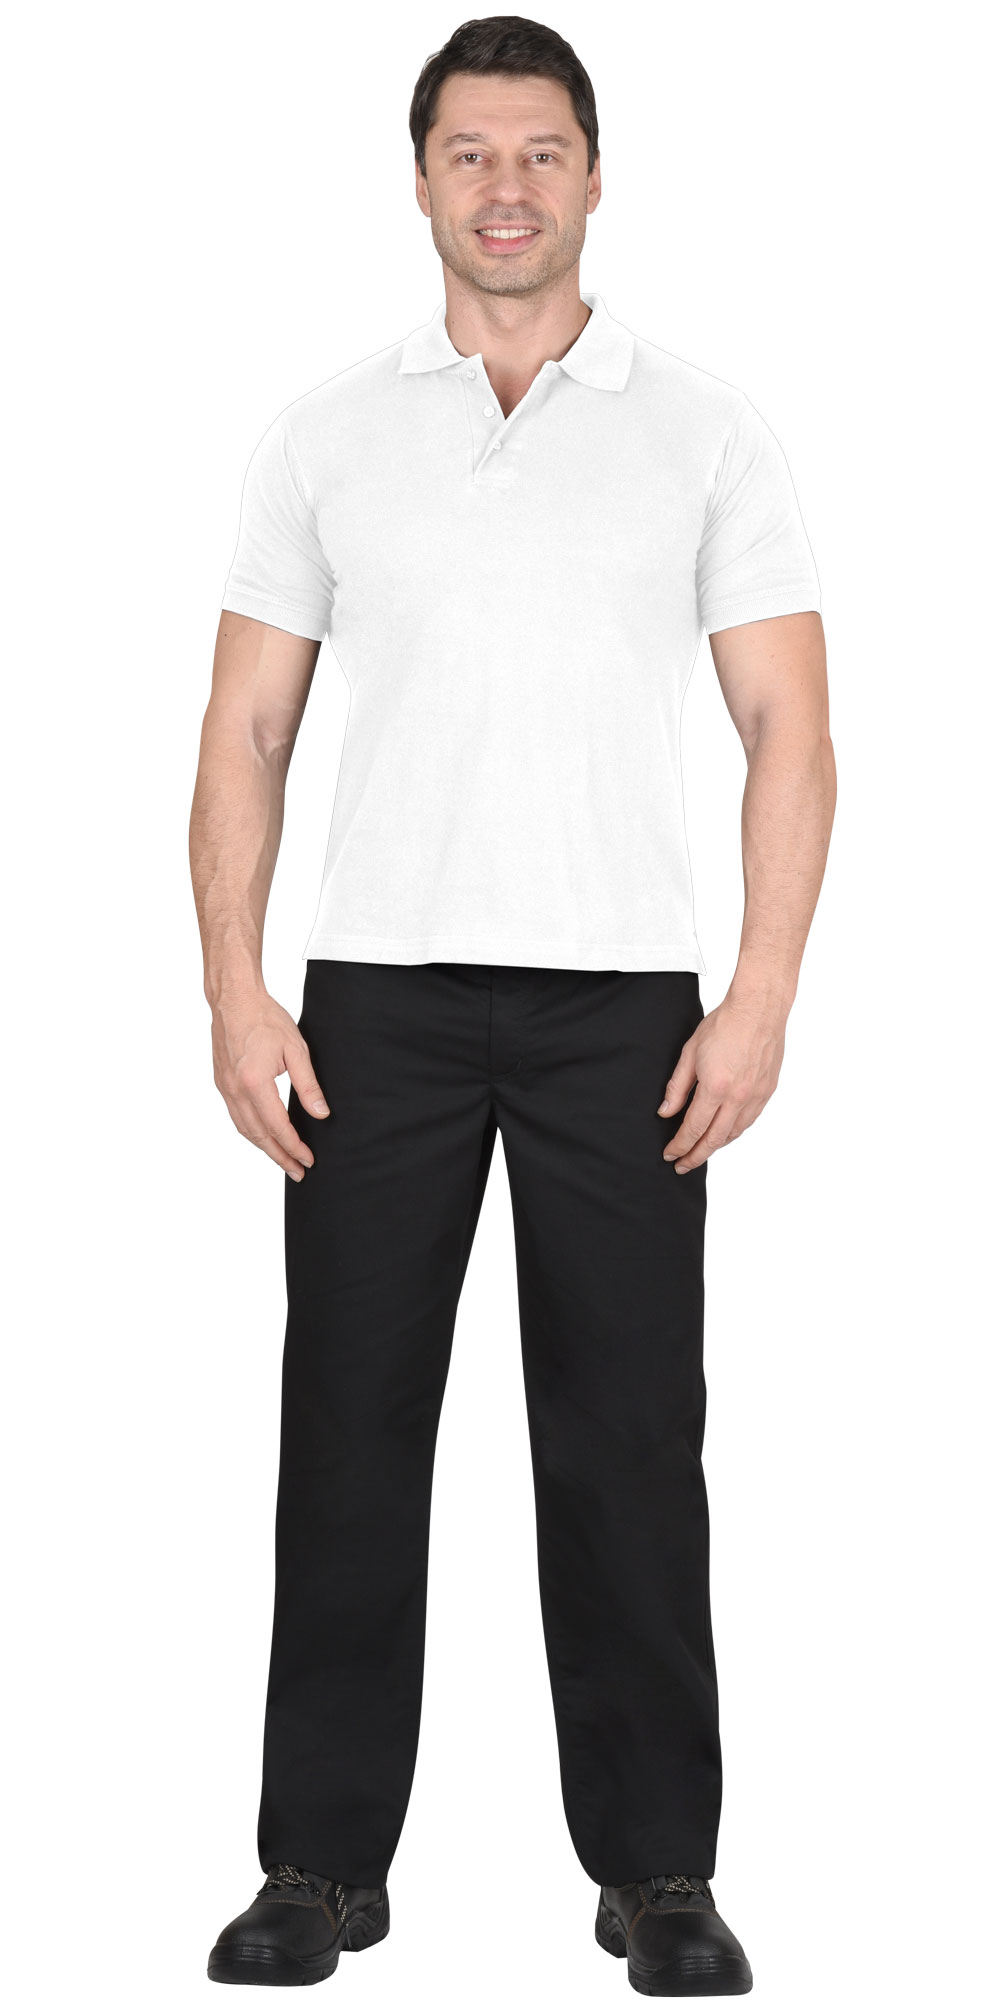 Рубашка-поло мужская, рукав короткий, цвет: белый, плотность 180г/кв.м